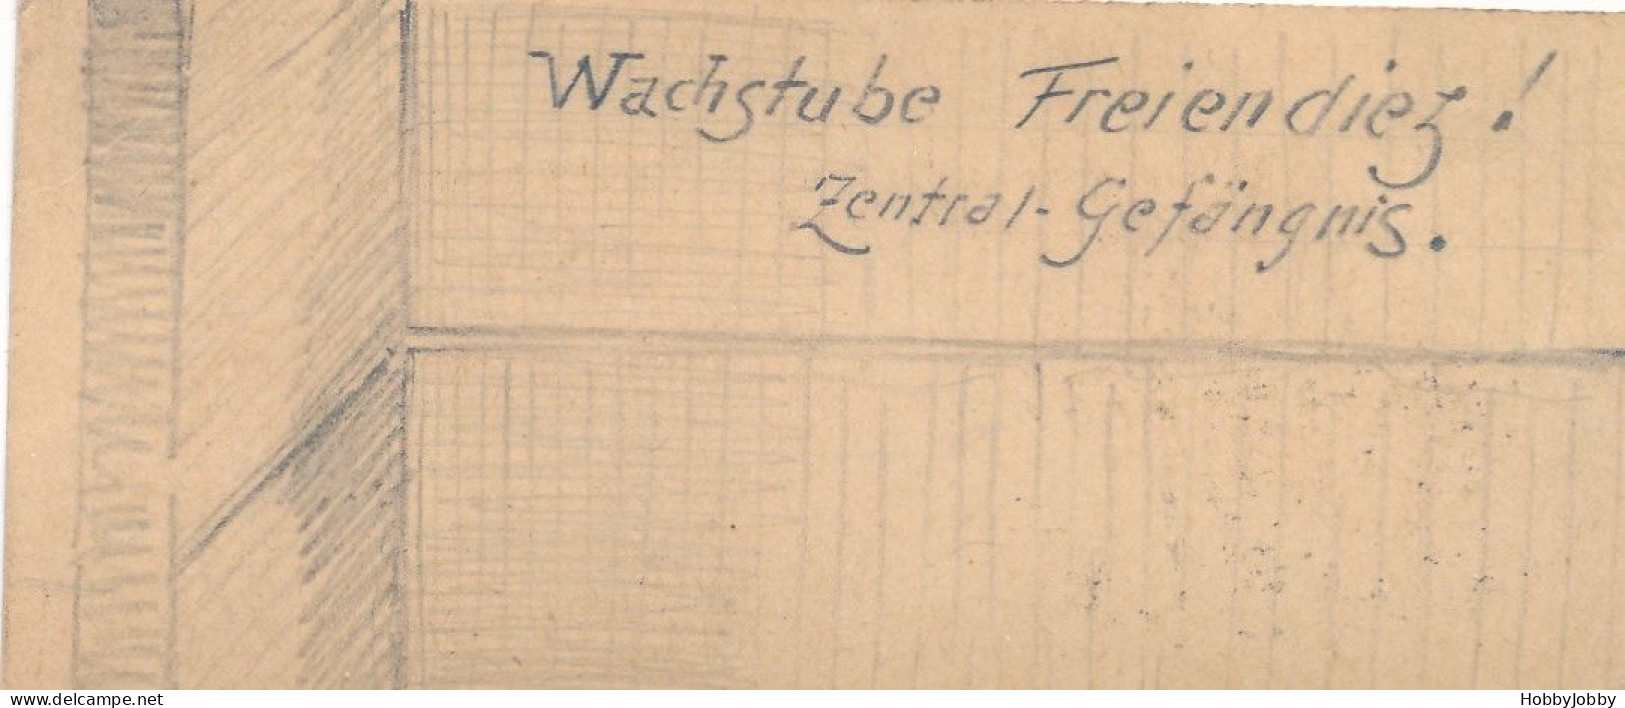 2 Stück I. WK Handgezeichnet-Bleistift:Wach-Stube Kaiser-Wilhelm-Kaserne + Wachstube-Freiendiez! Zentral Gefägnis. - Barracks